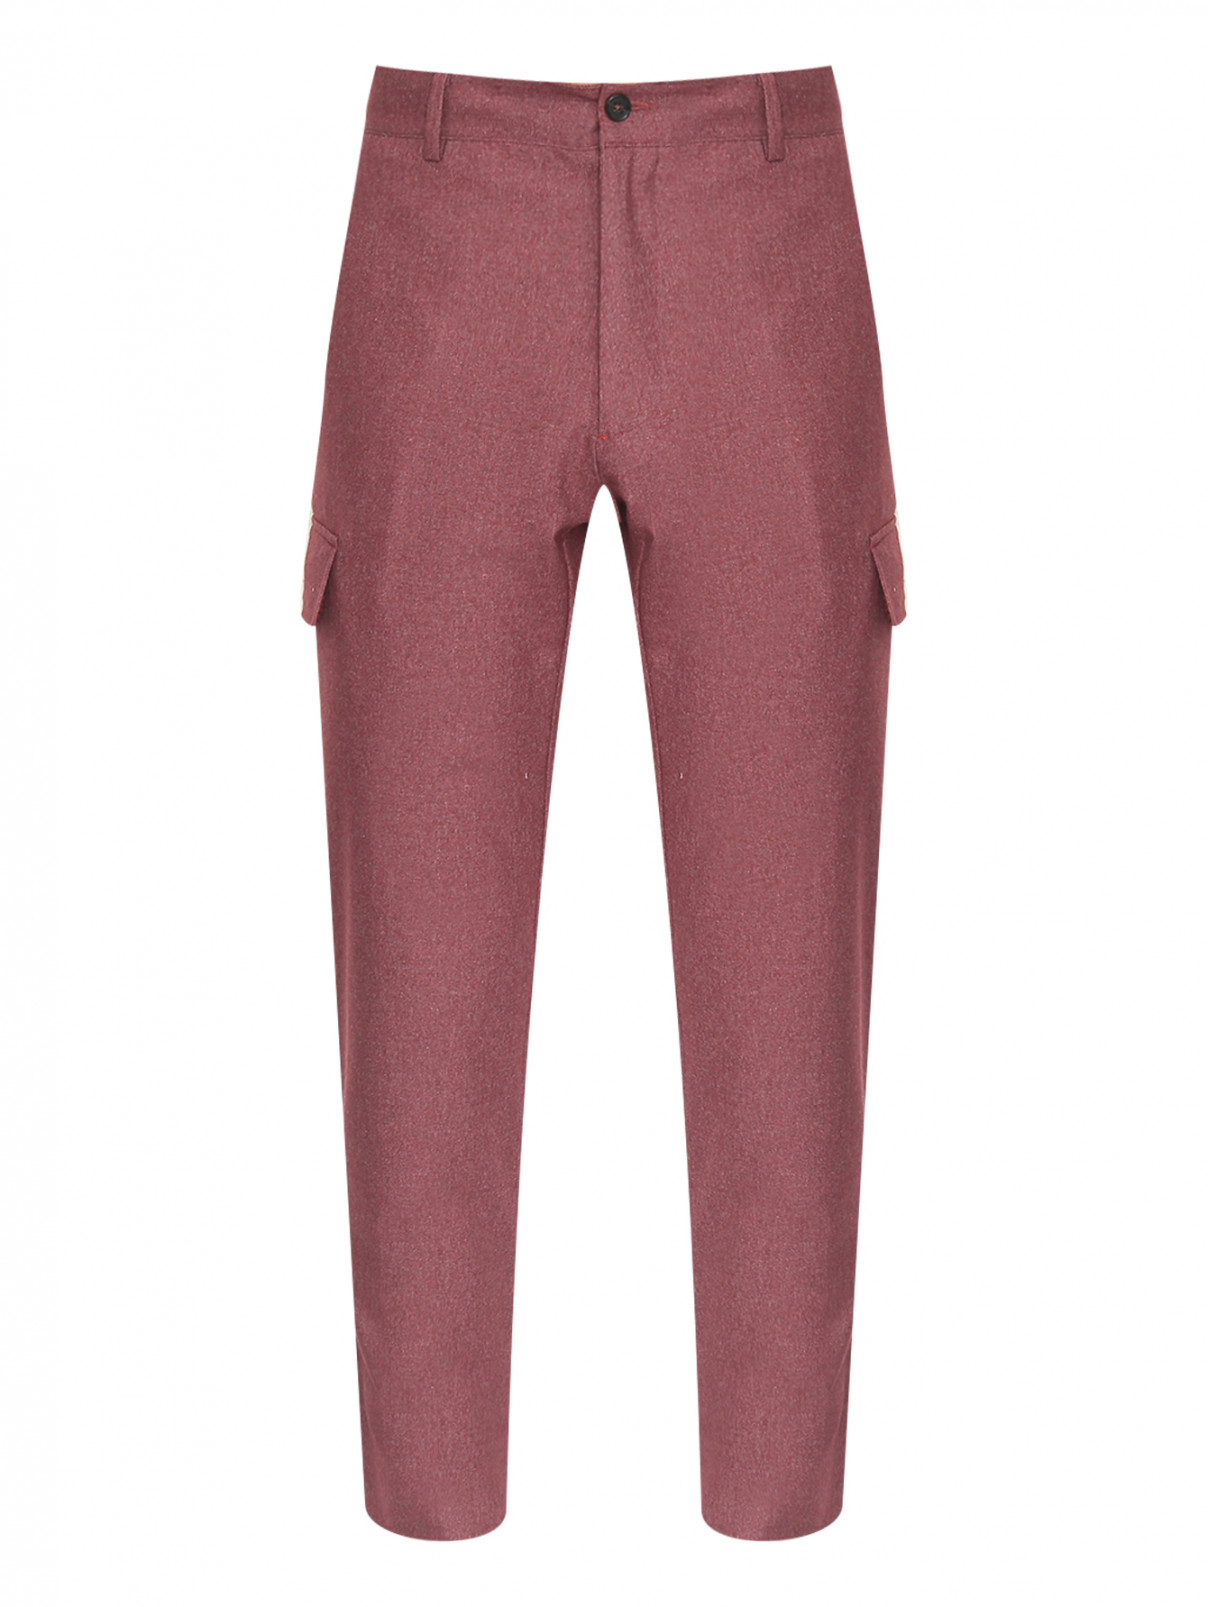 Однотонные брюки с накладными карманами Isaia  –  Общий вид  – Цвет:  Красный